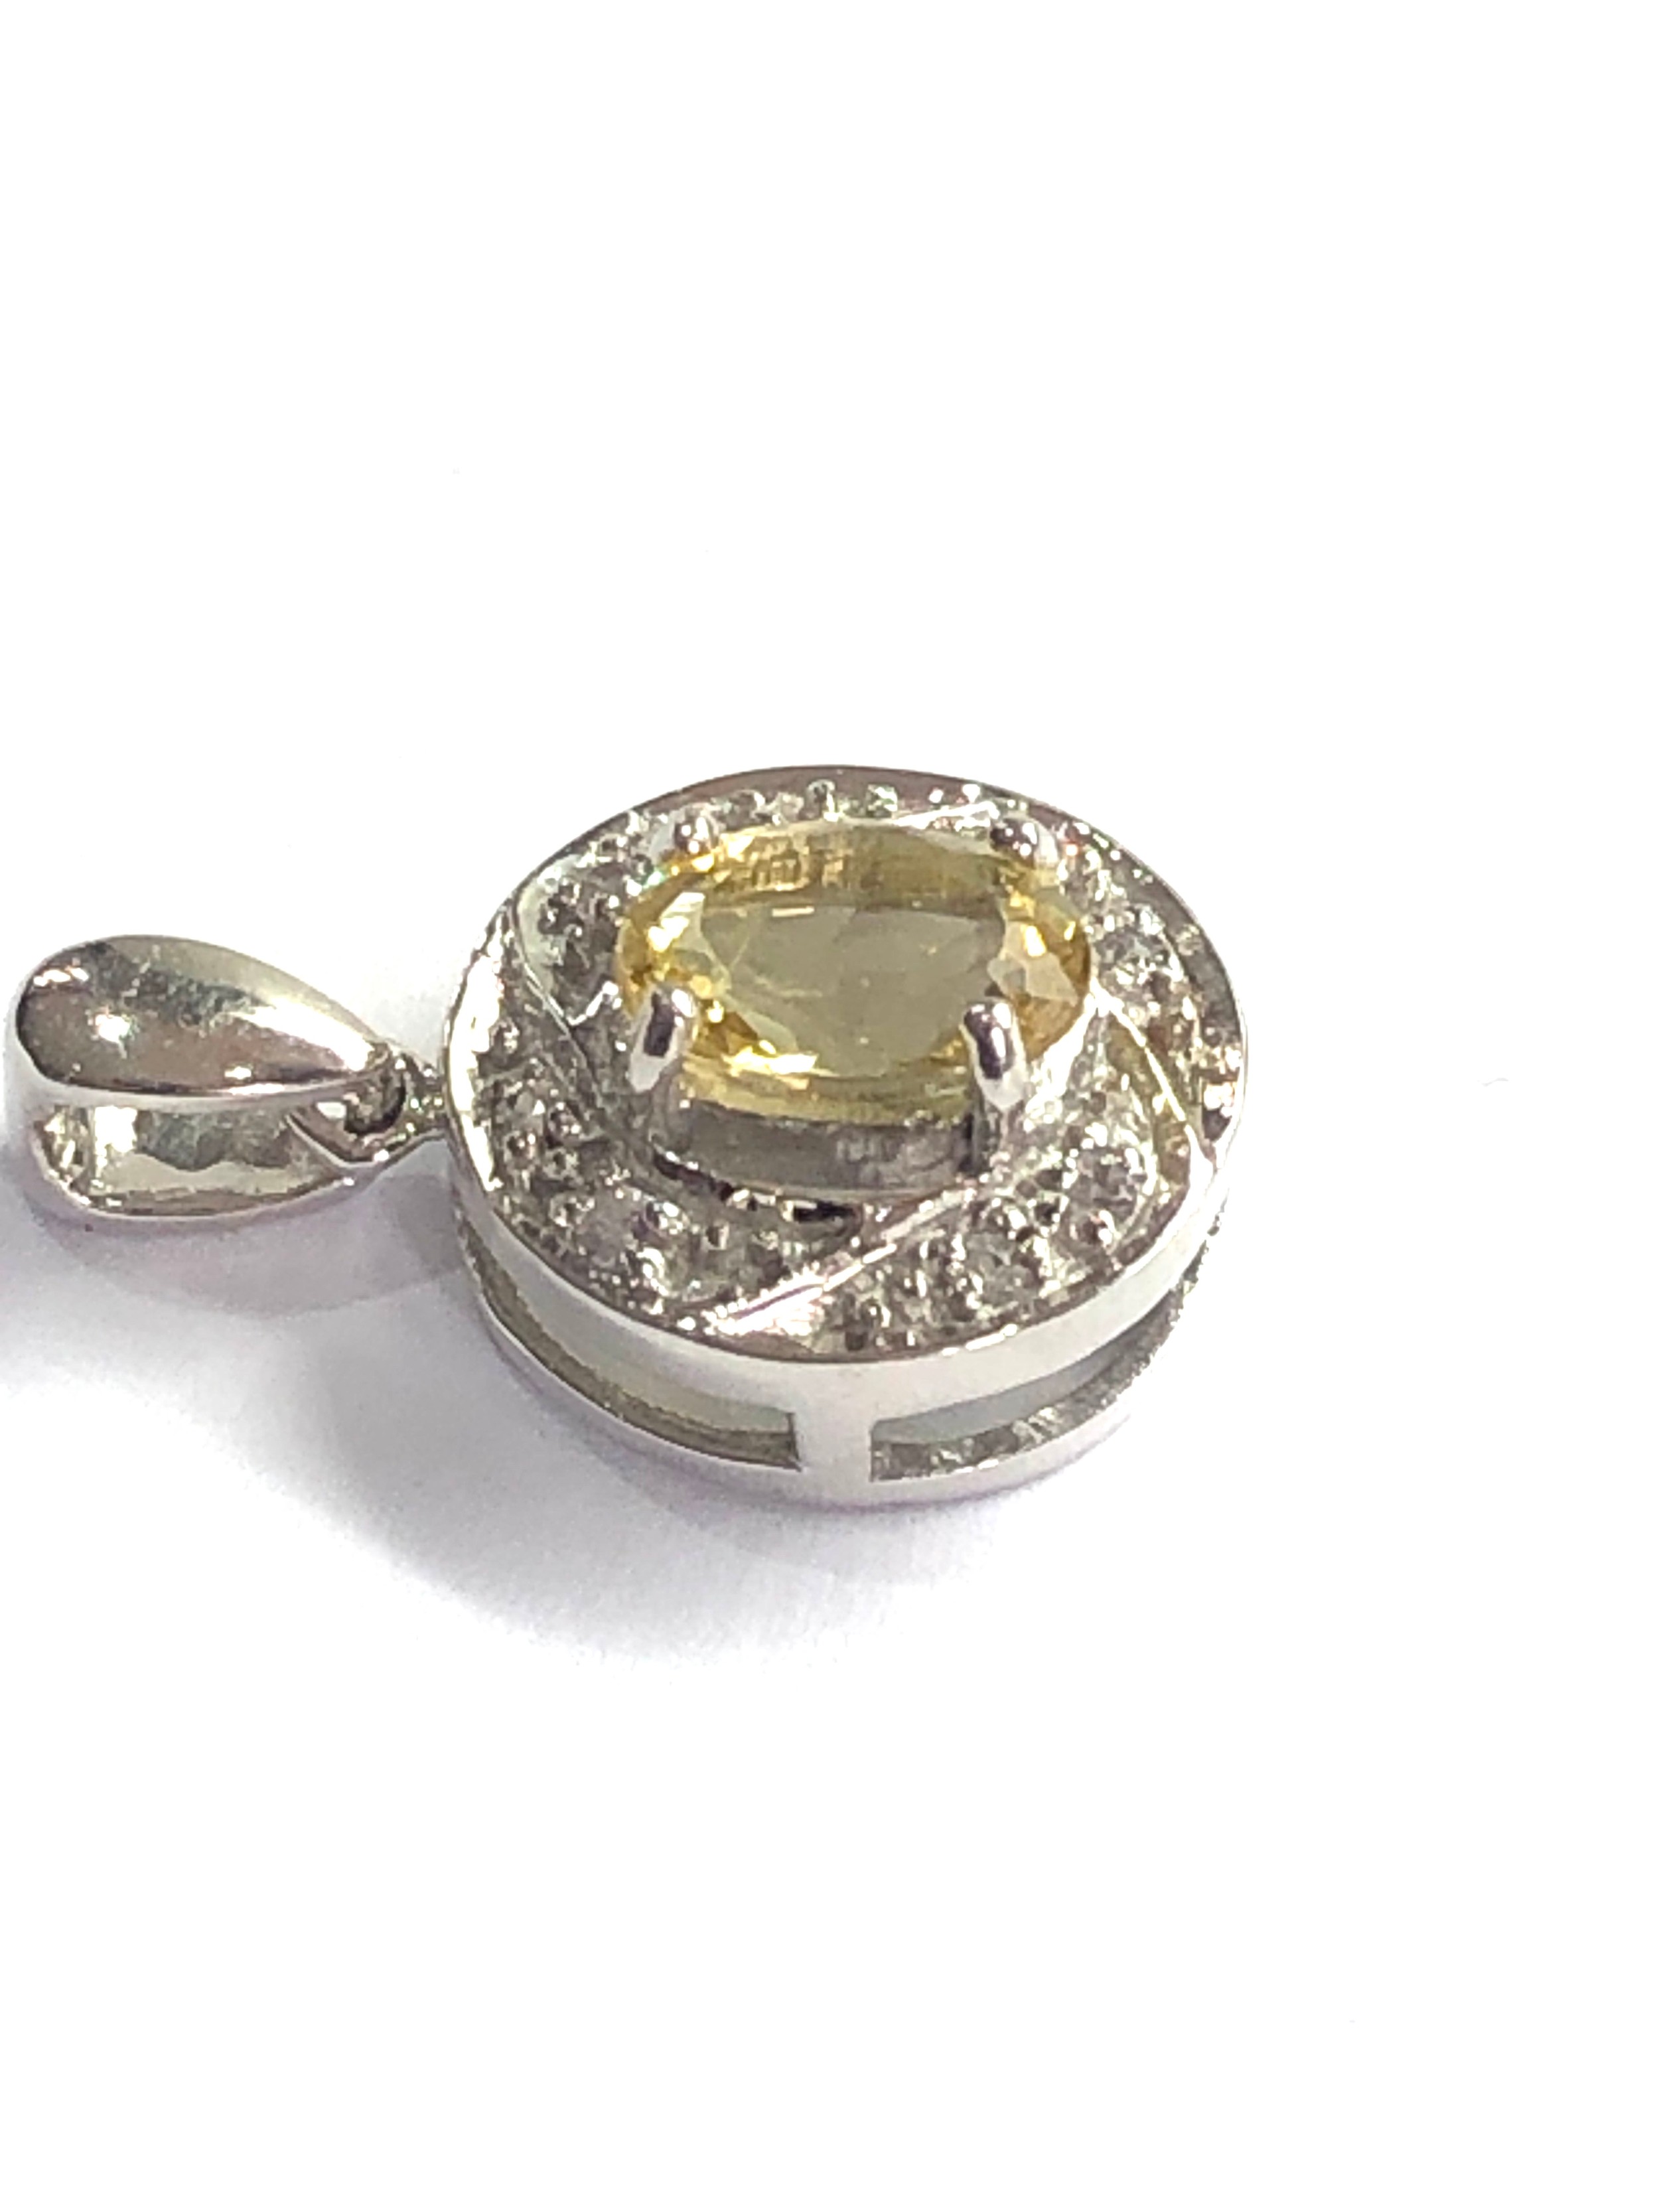 9ct white gold yellow beryl & white sapphire pendant weight 3.4g - Image 2 of 4